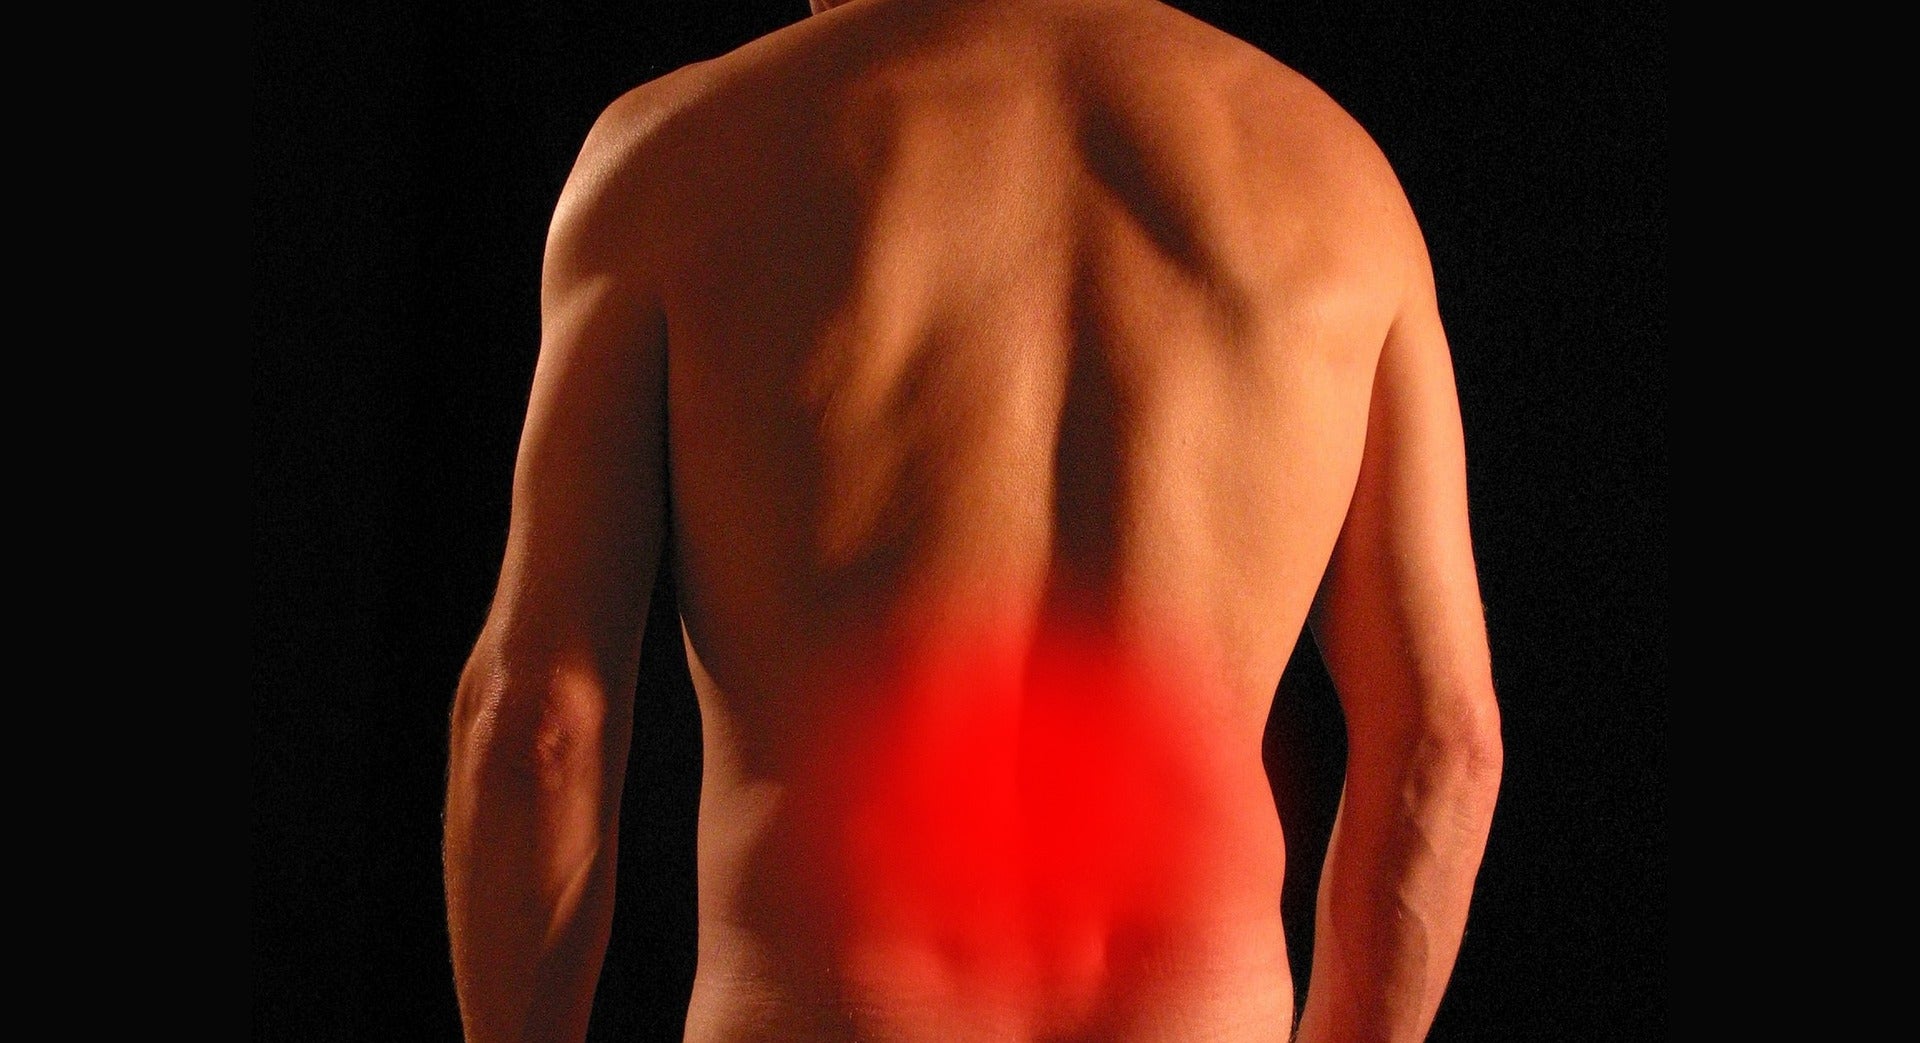 An image showing back pain. Image by Tumisu from Pixabay.